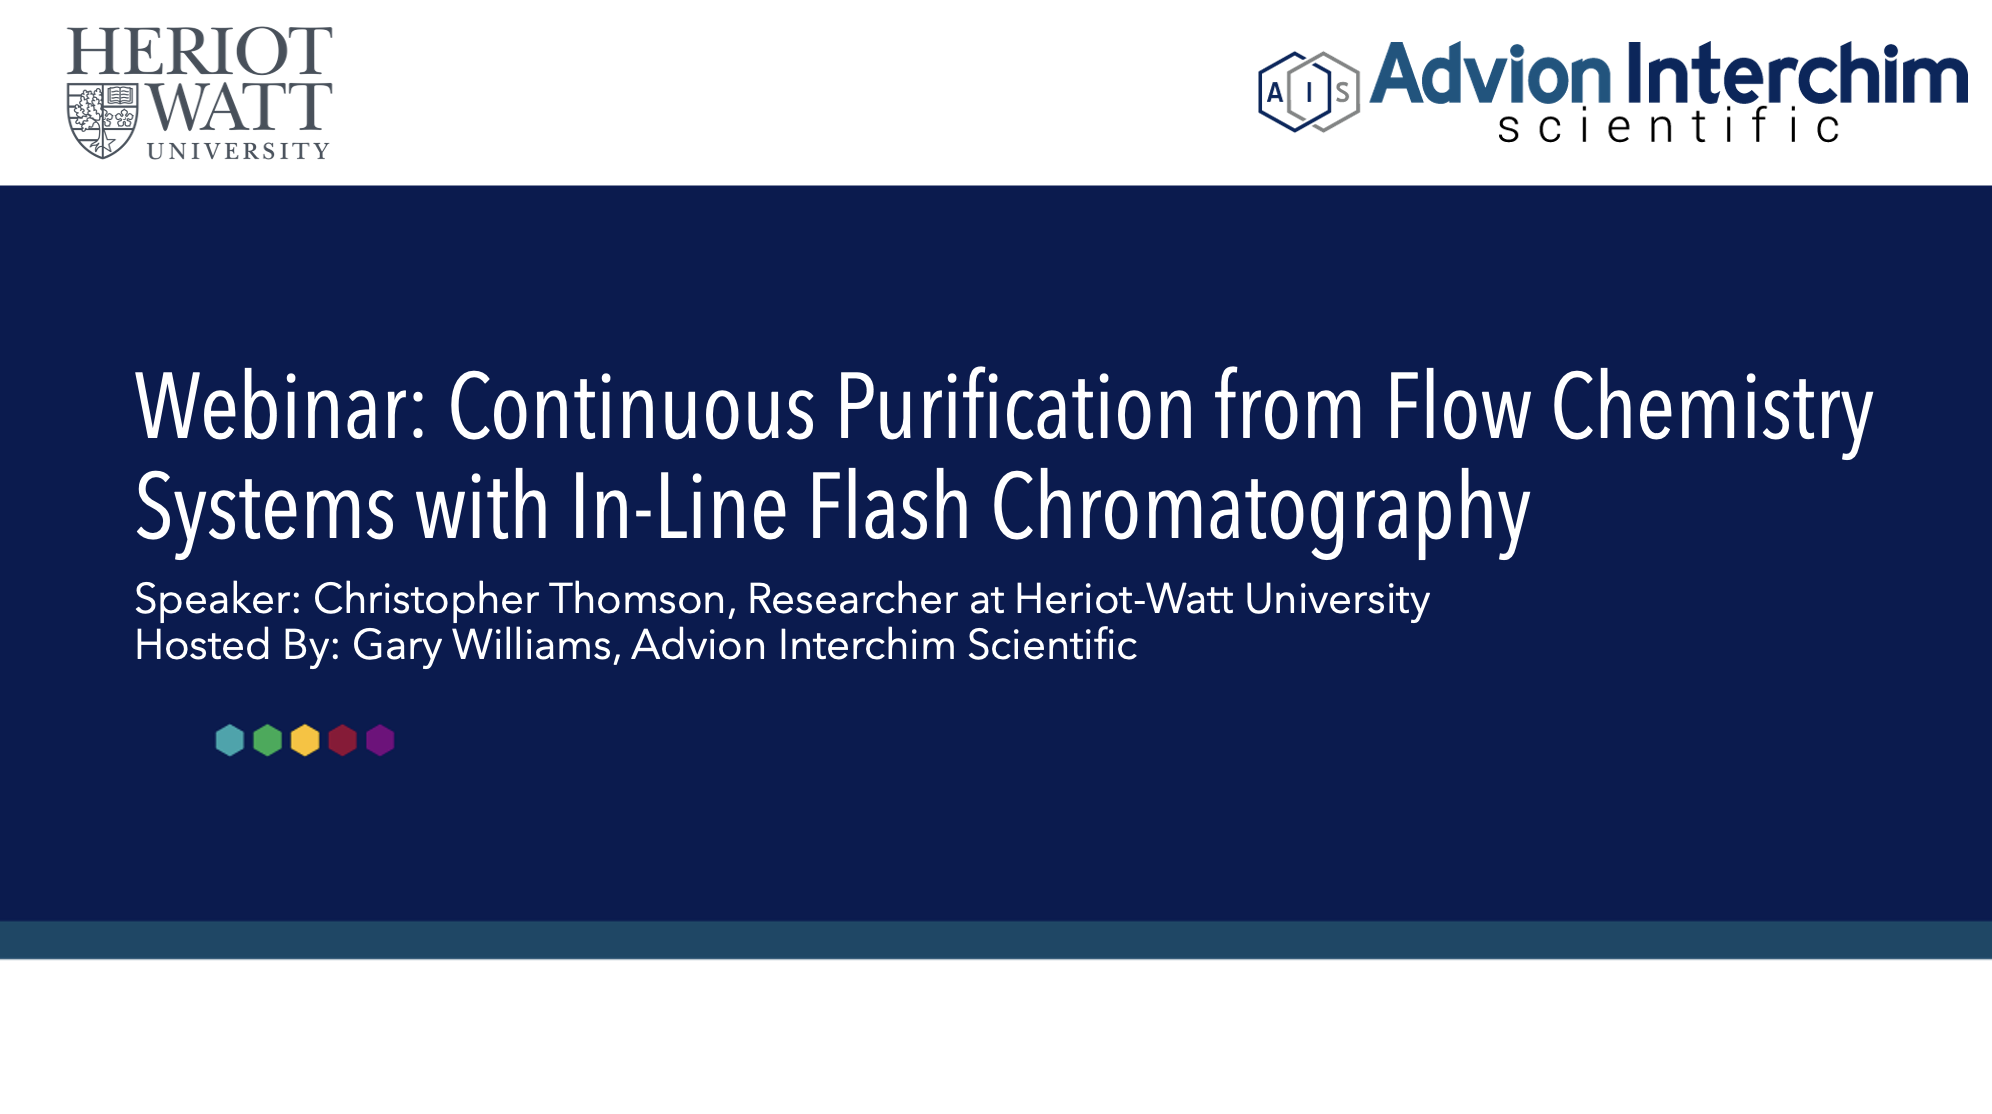 Purificación continua de sistemas de química de flujo con cromatografía flash en línea